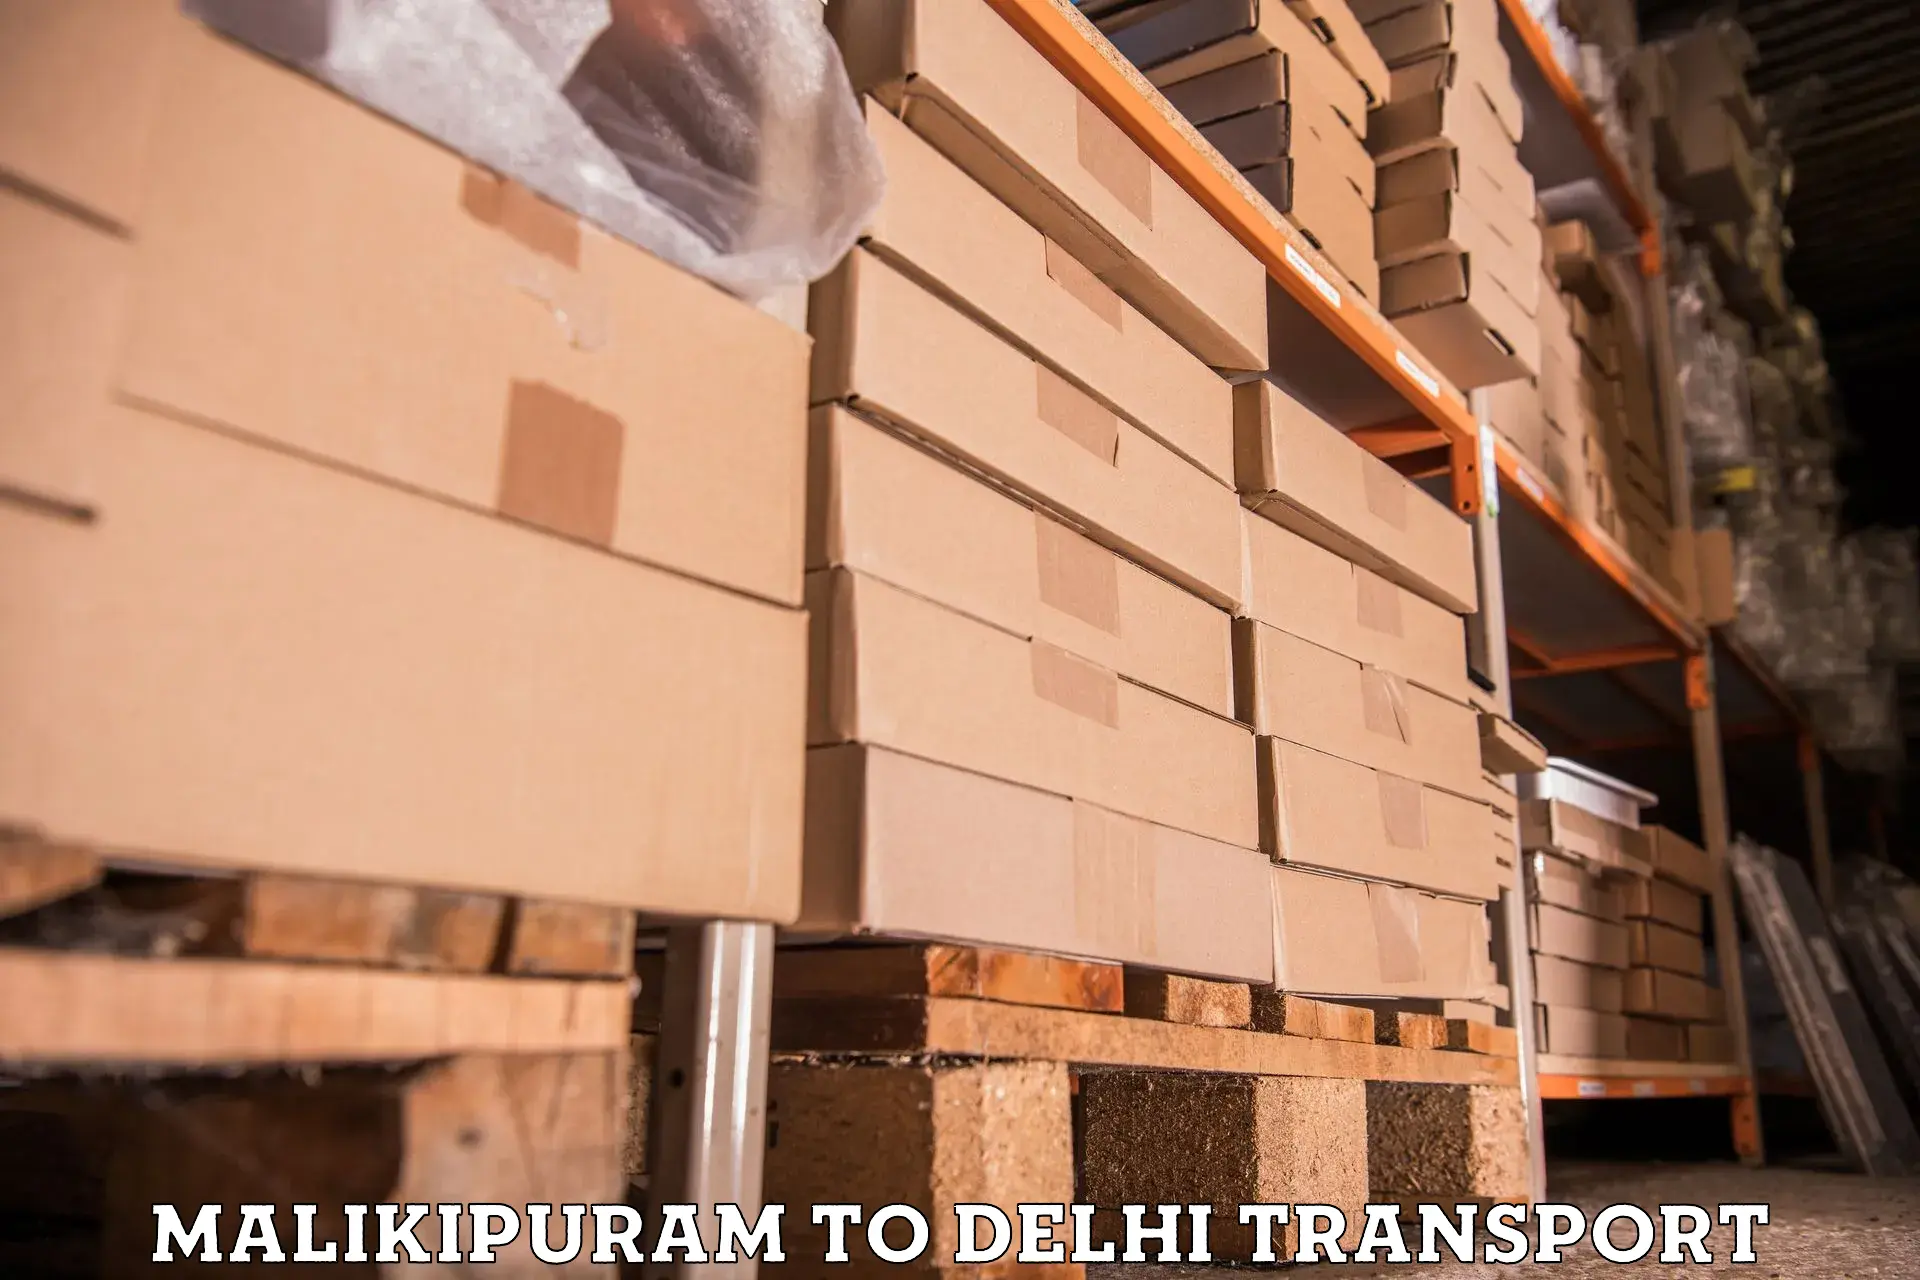 Truck transport companies in India Malikipuram to Jawaharlal Nehru University New Delhi